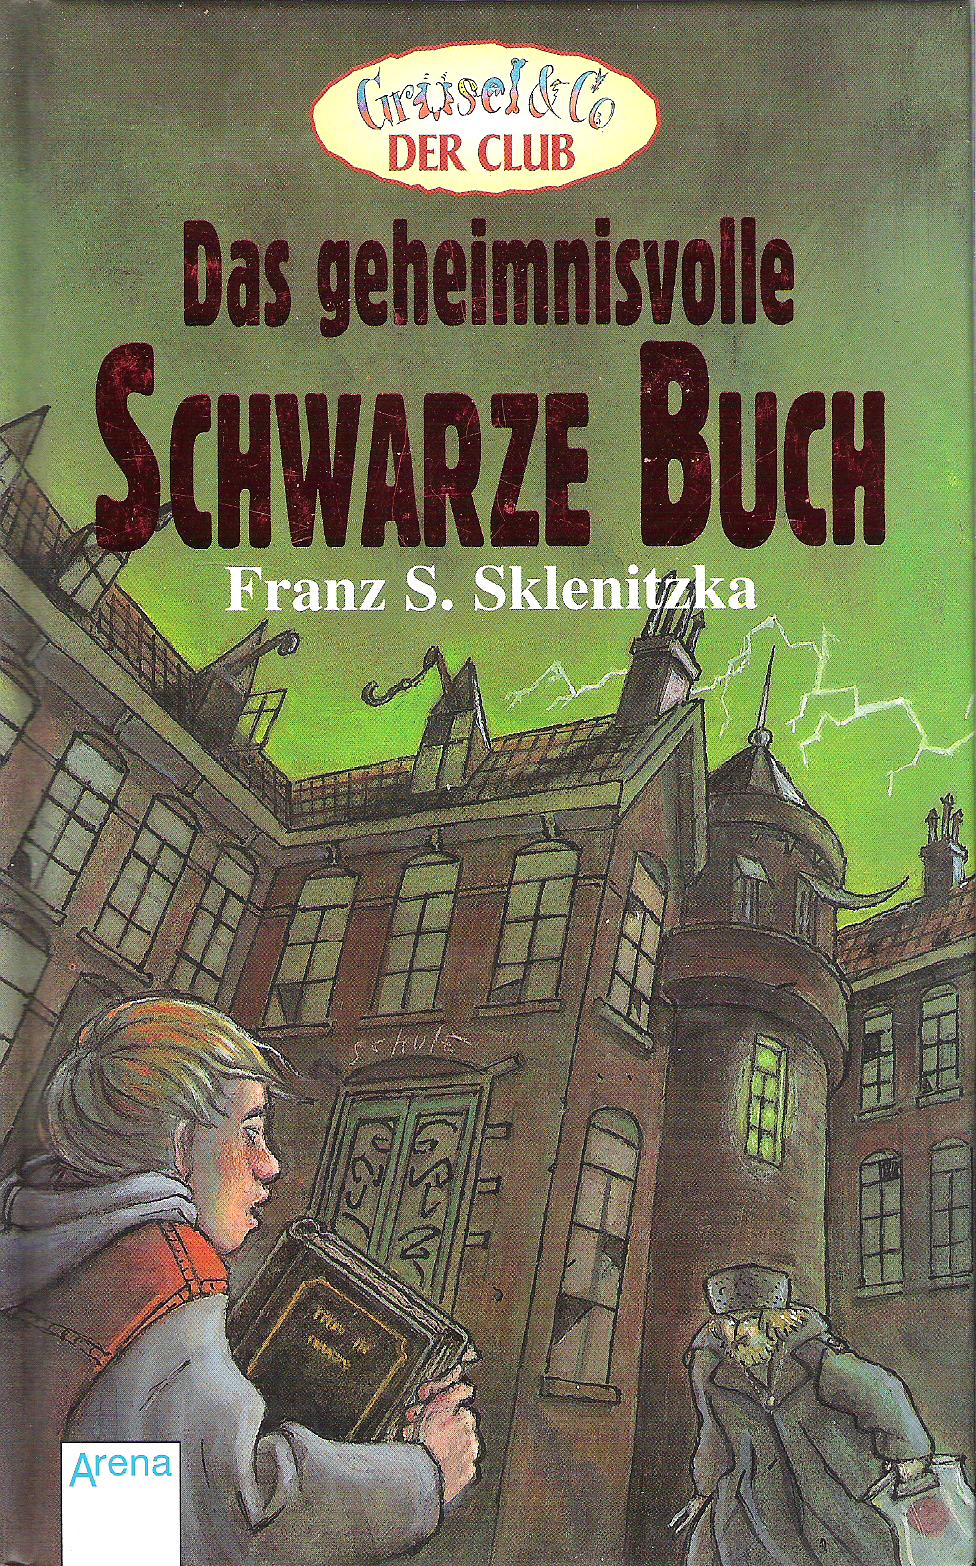 Franz S. Sklenitzka  Das Geheimnisvolle Schwarze Buch 